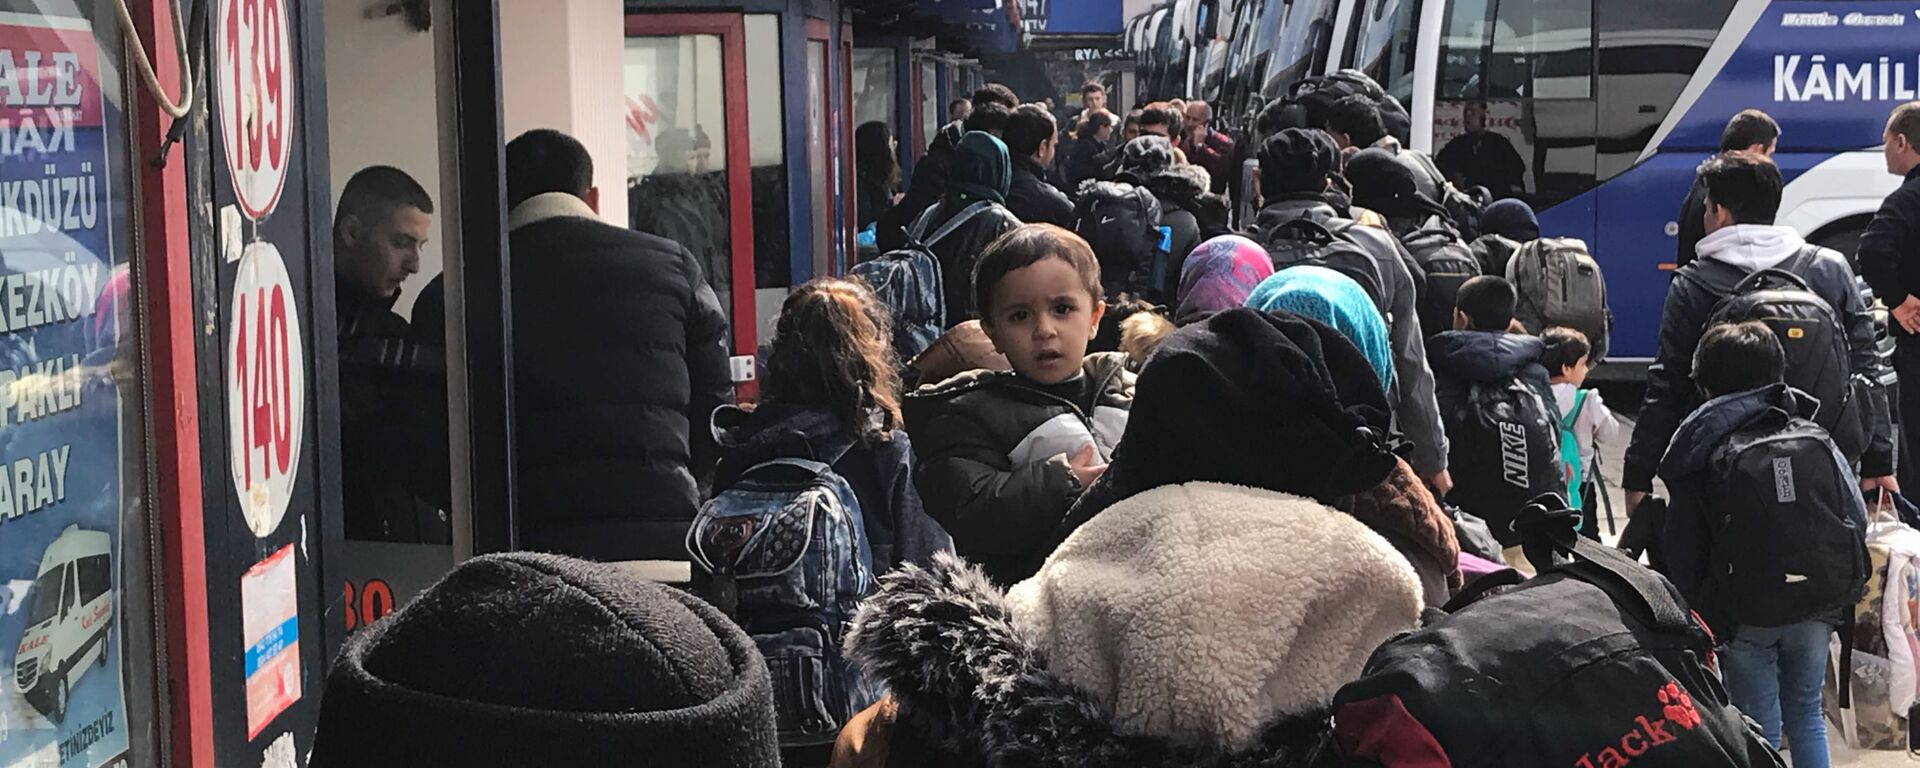 Беженцы из Сирии на вокзале в Турции - Sputnik Латвия, 1920, 01.03.2020